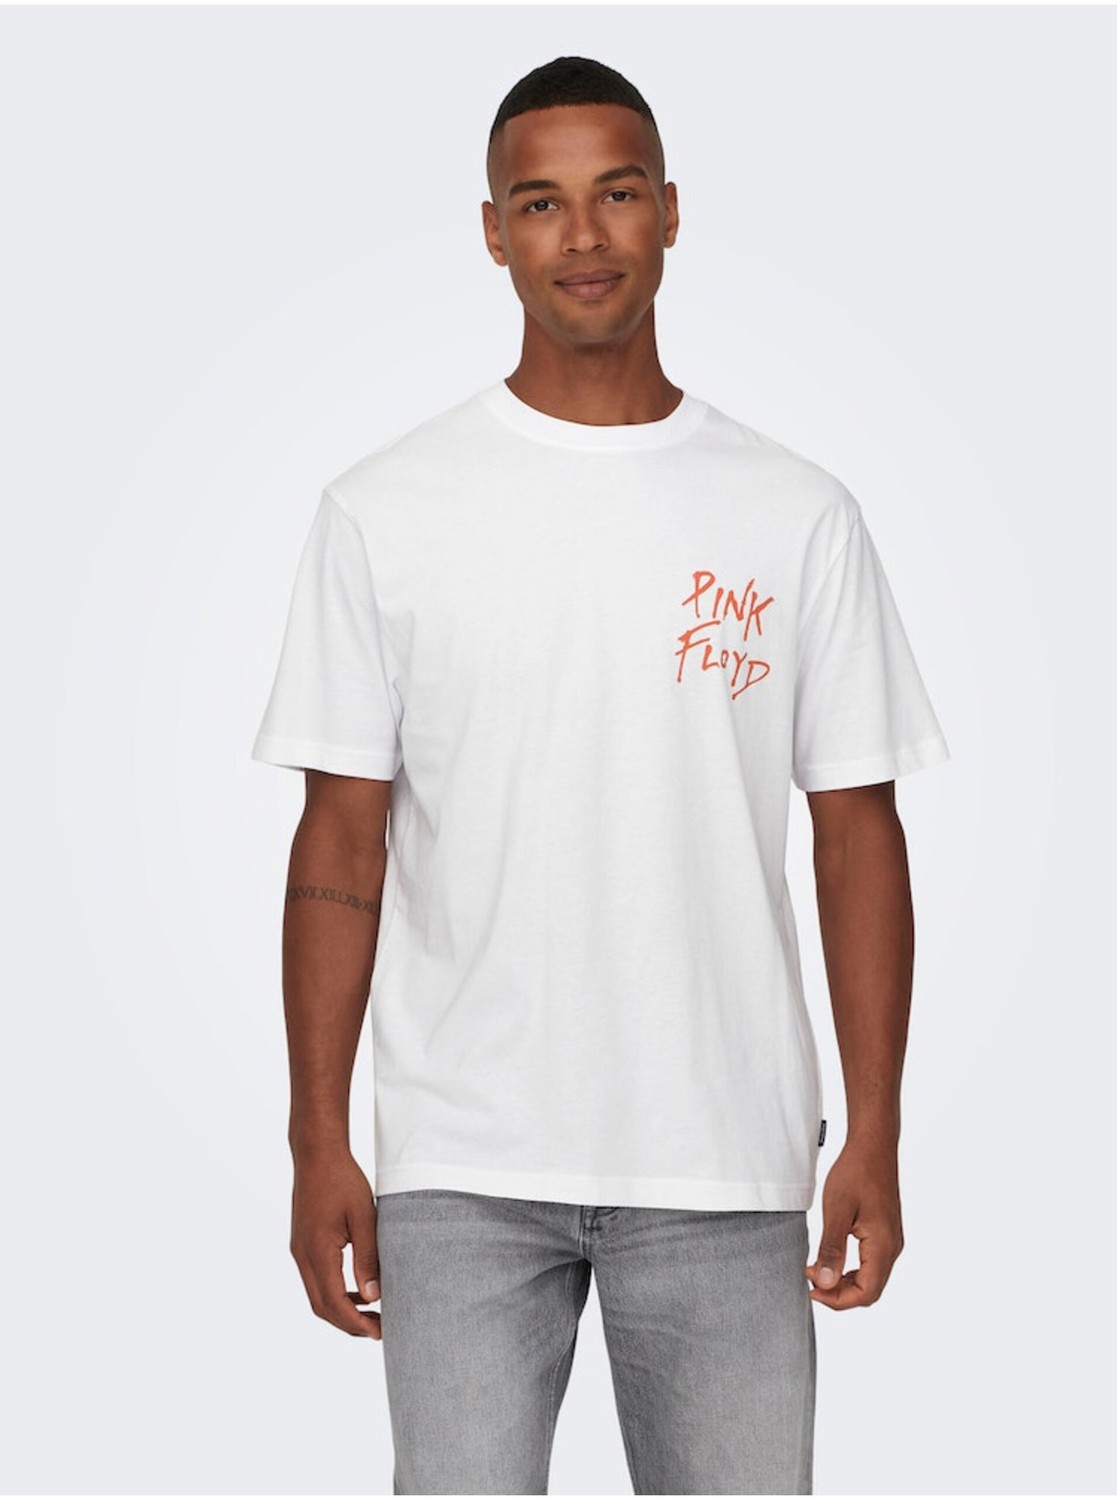 Bílé pánské tričko s krátkým rukávem ONLY & SONS Pink Floyd - Pánské